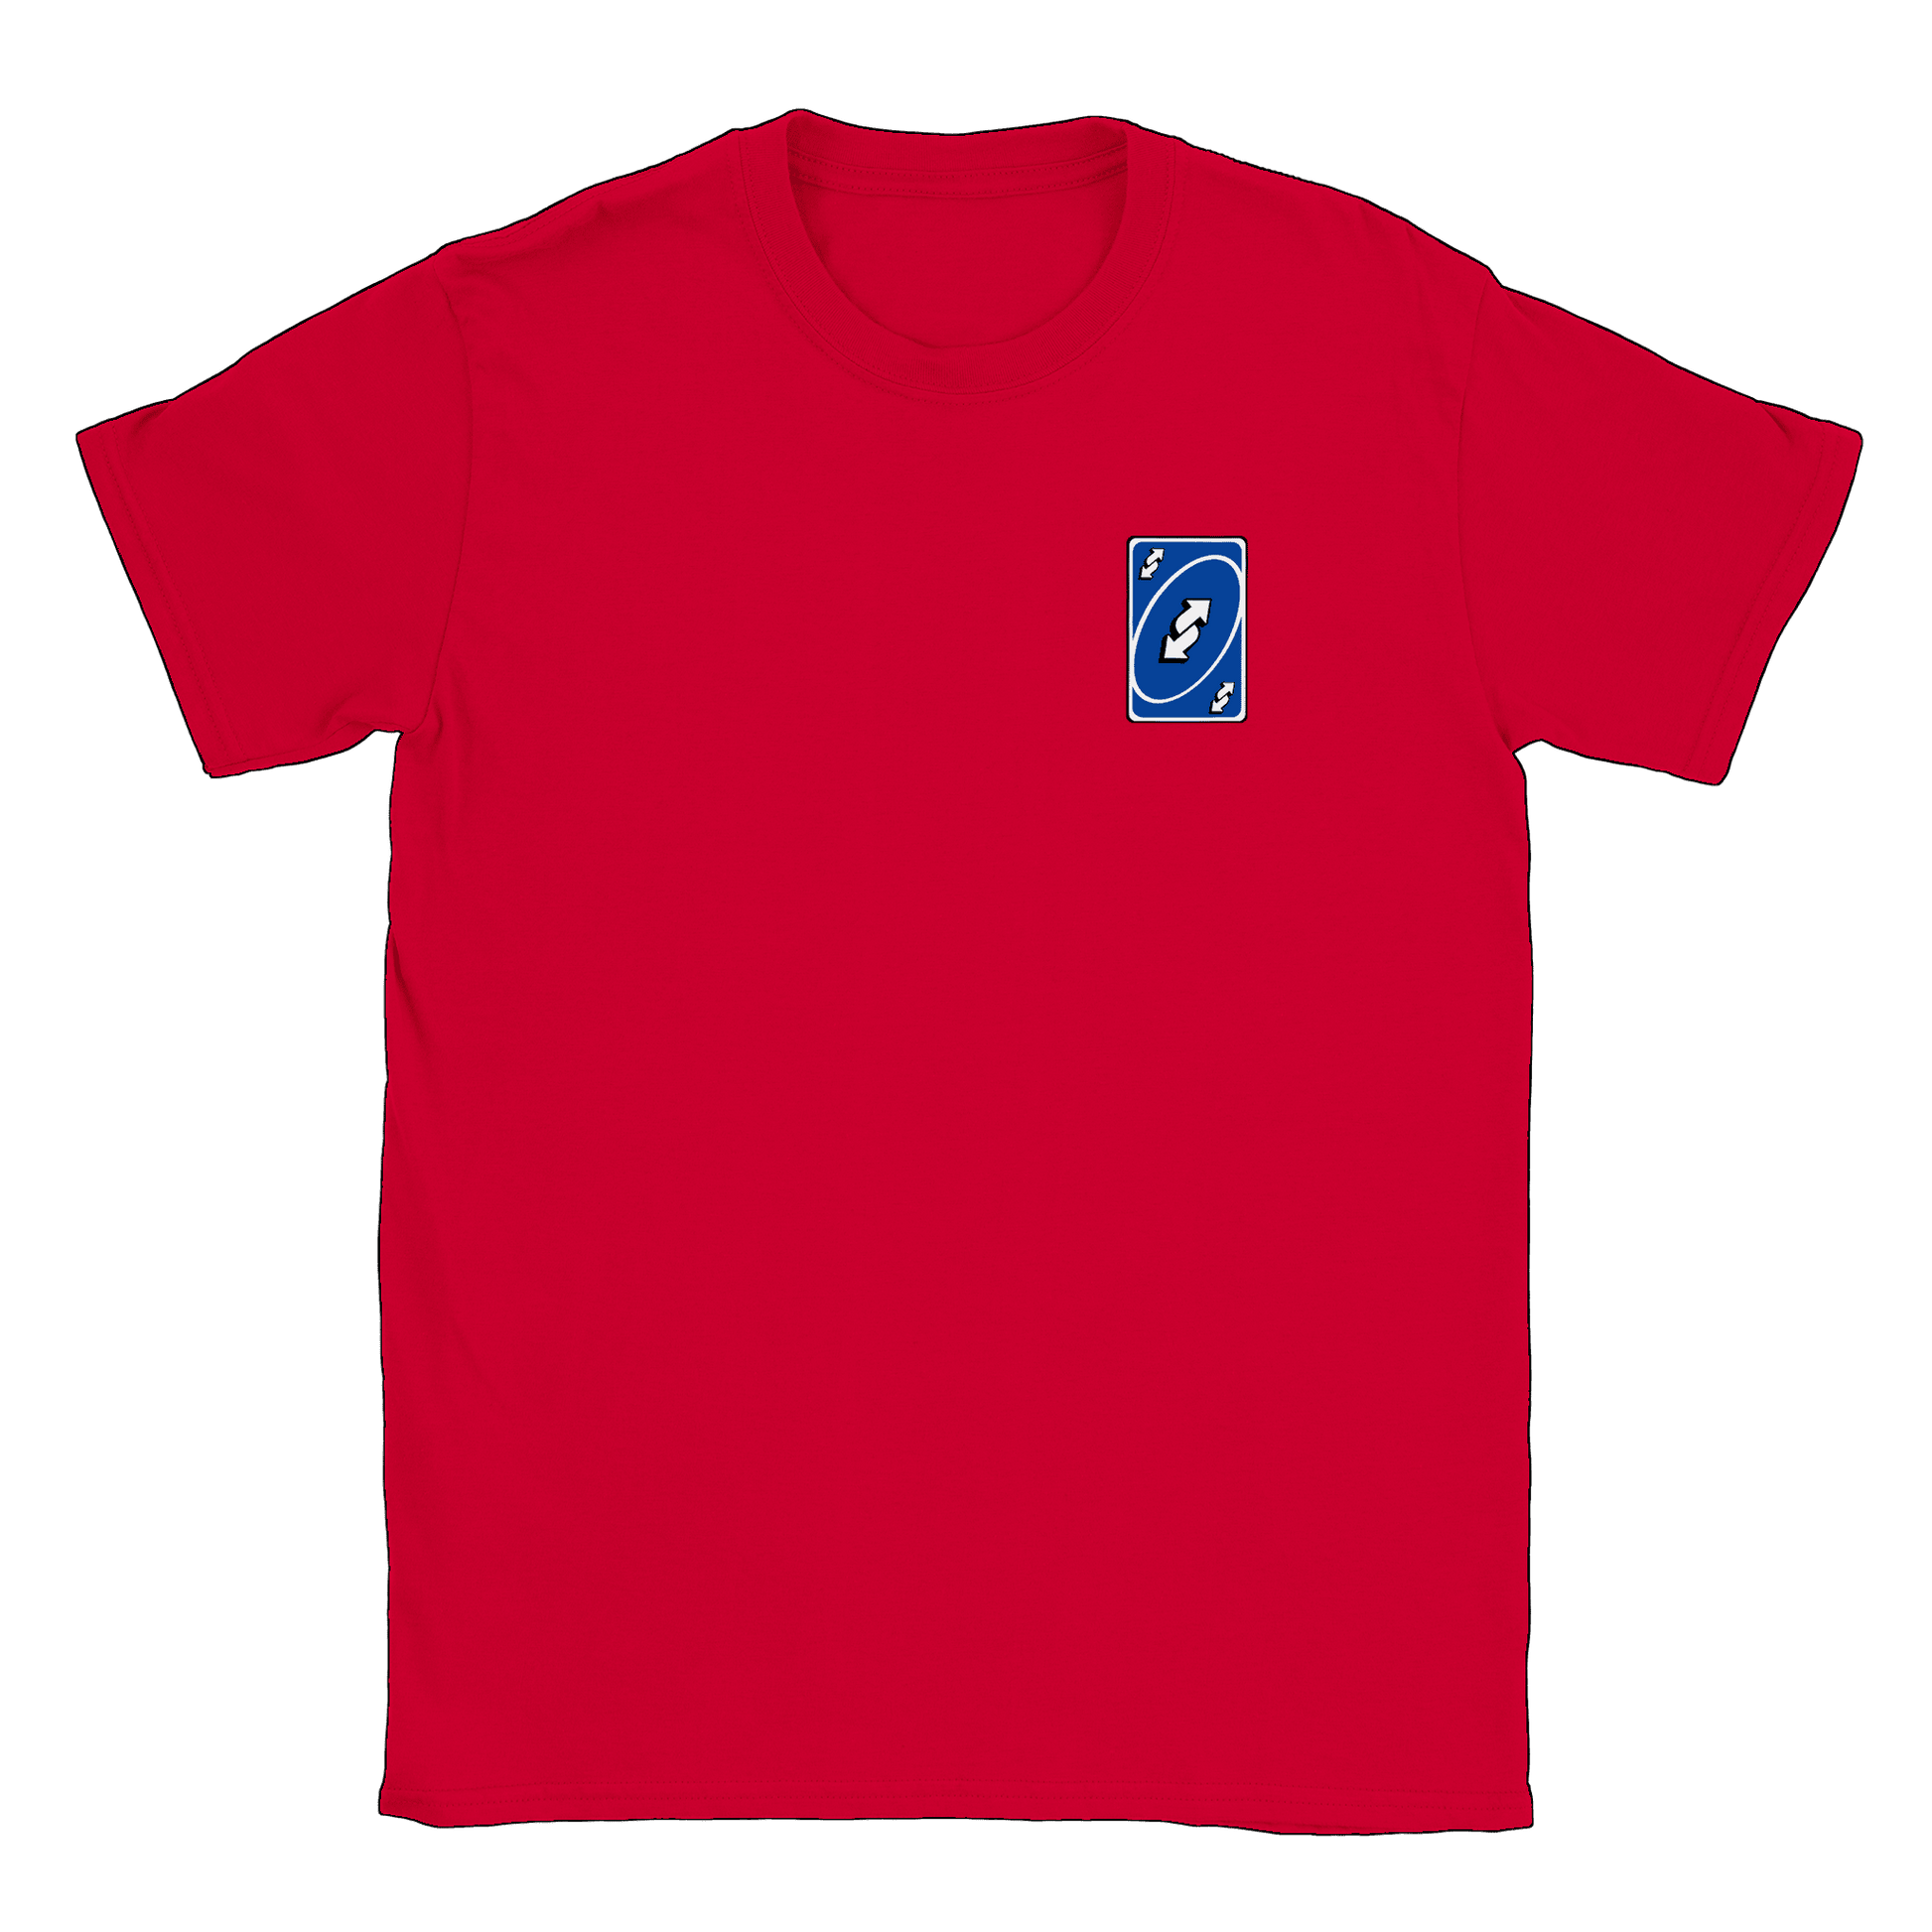 Vändkort litet - T-shirt Röd